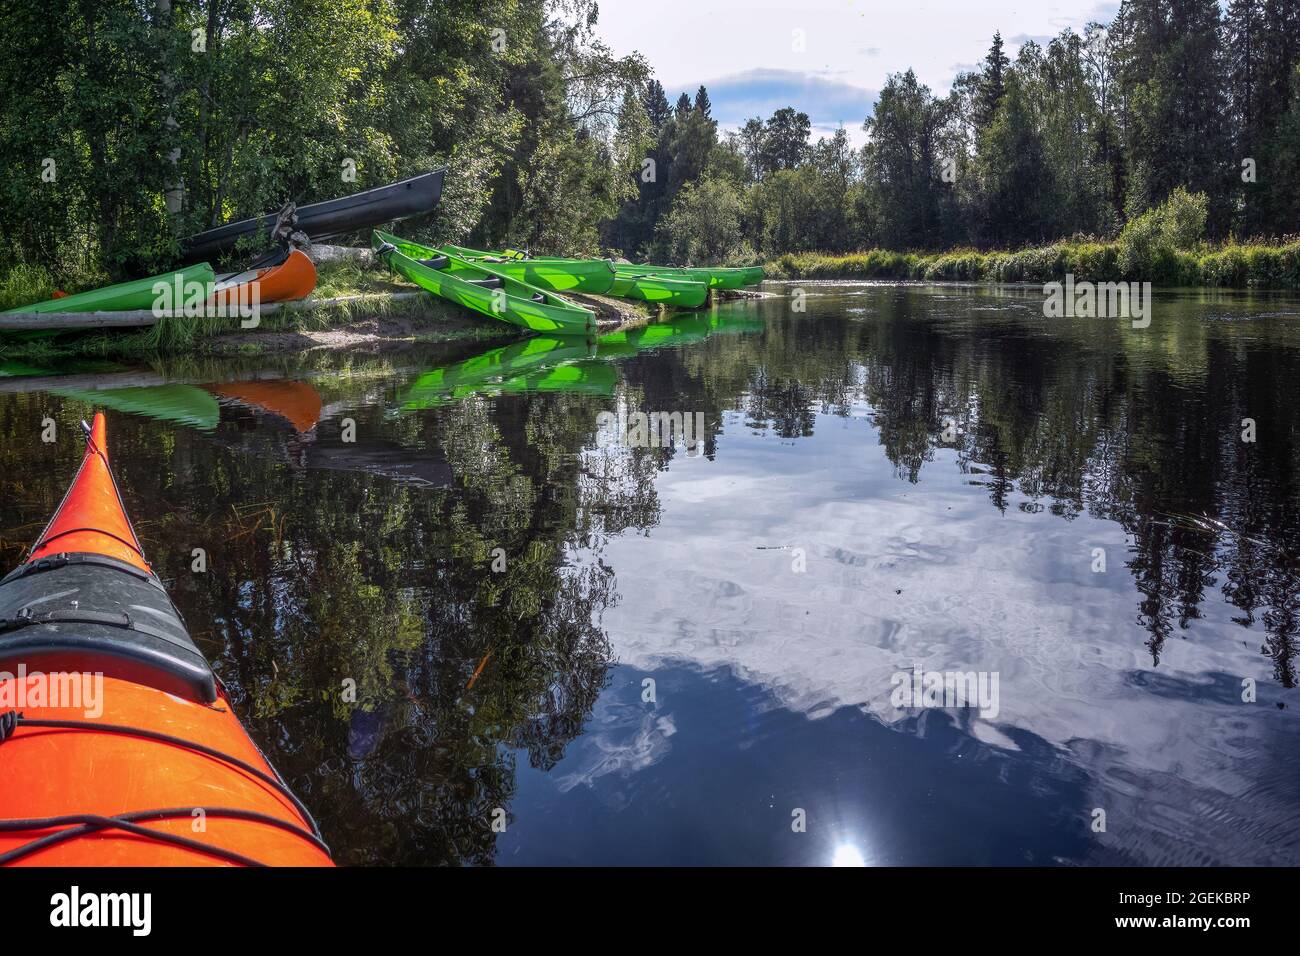 Un sacco di canoa parcheggiato sulla riva del fiume sotto gli alberi al bordo della foresta. Canoe verdi, nere, arancioni lasciate in posizione di riposo. Canoa eccellente attività estiva Foto Stock